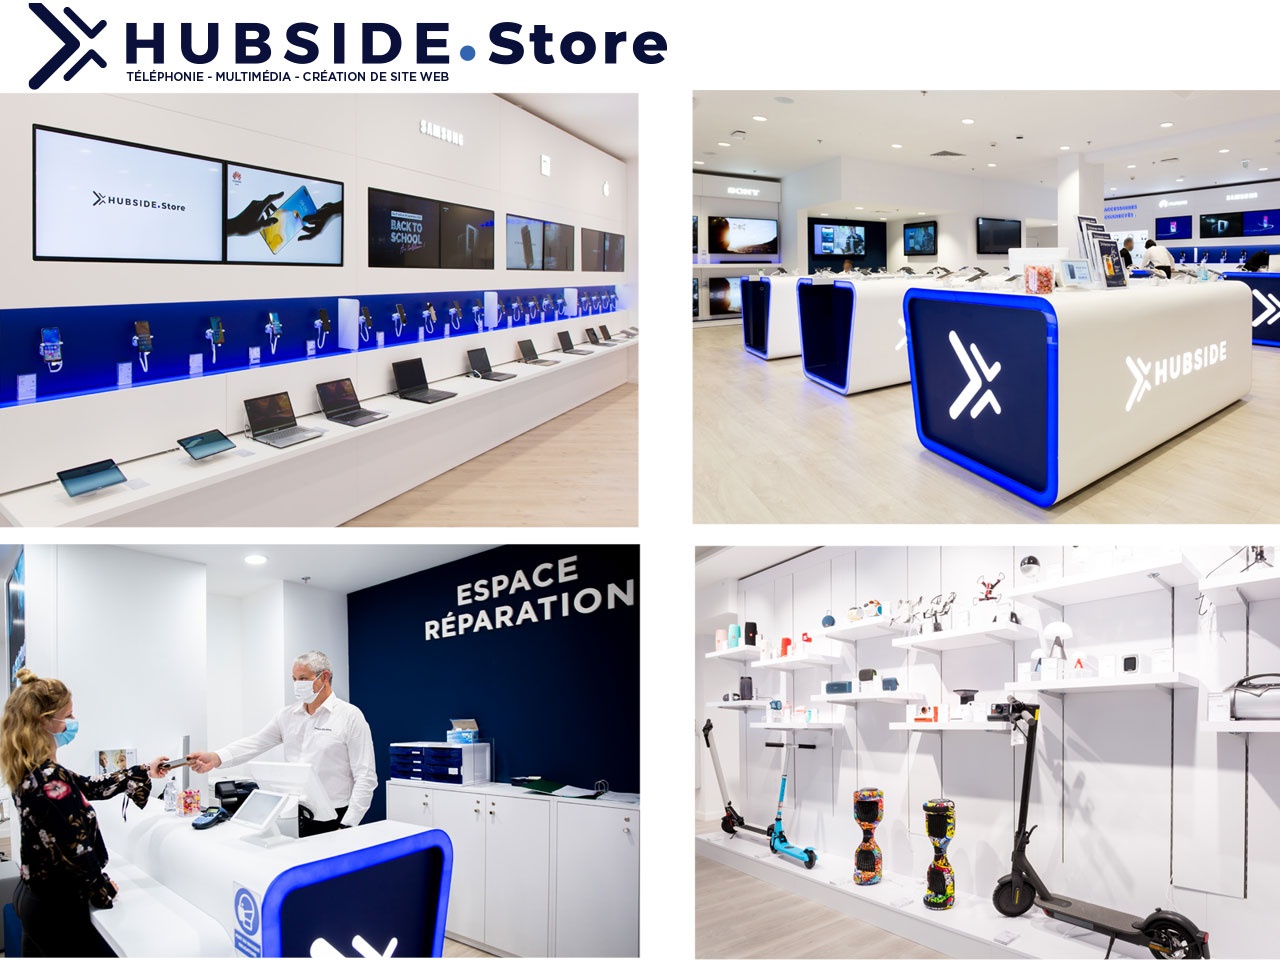 Hubside.Store renforce sa présence en Europe et prévoit 40 nouvelles boutiques, dont 20 en France